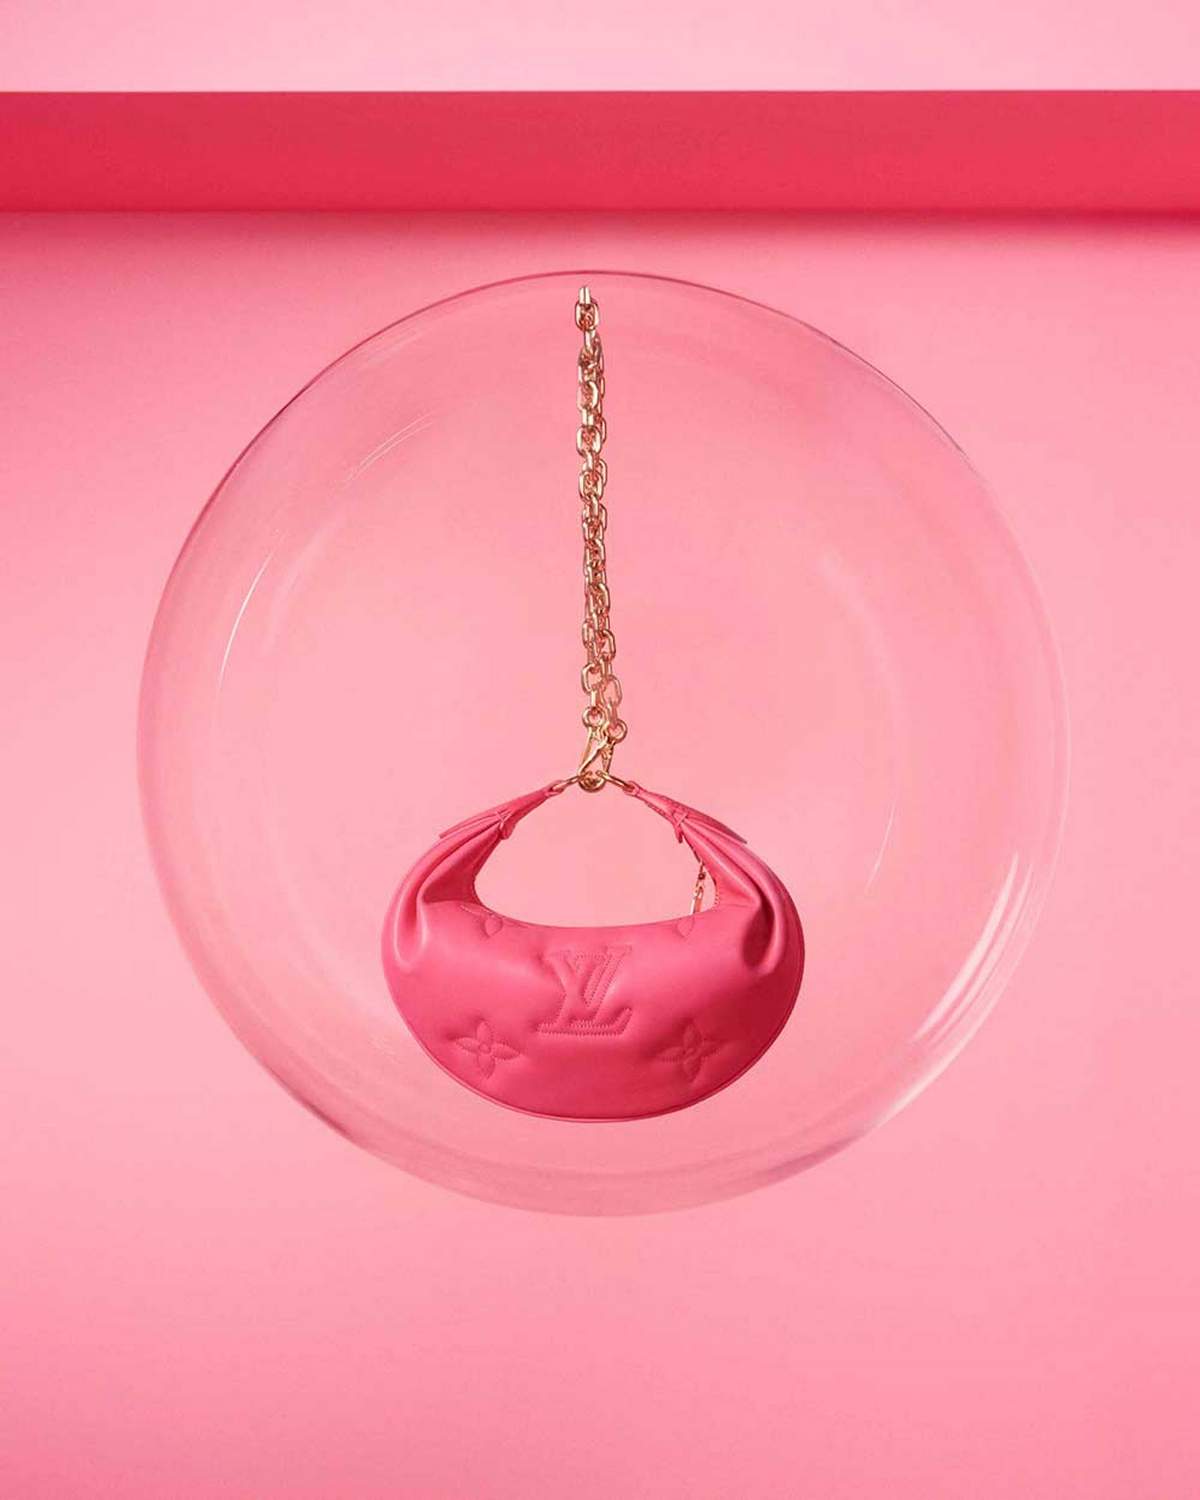 Louis Vuitton Mini Moon Rose Lollipop